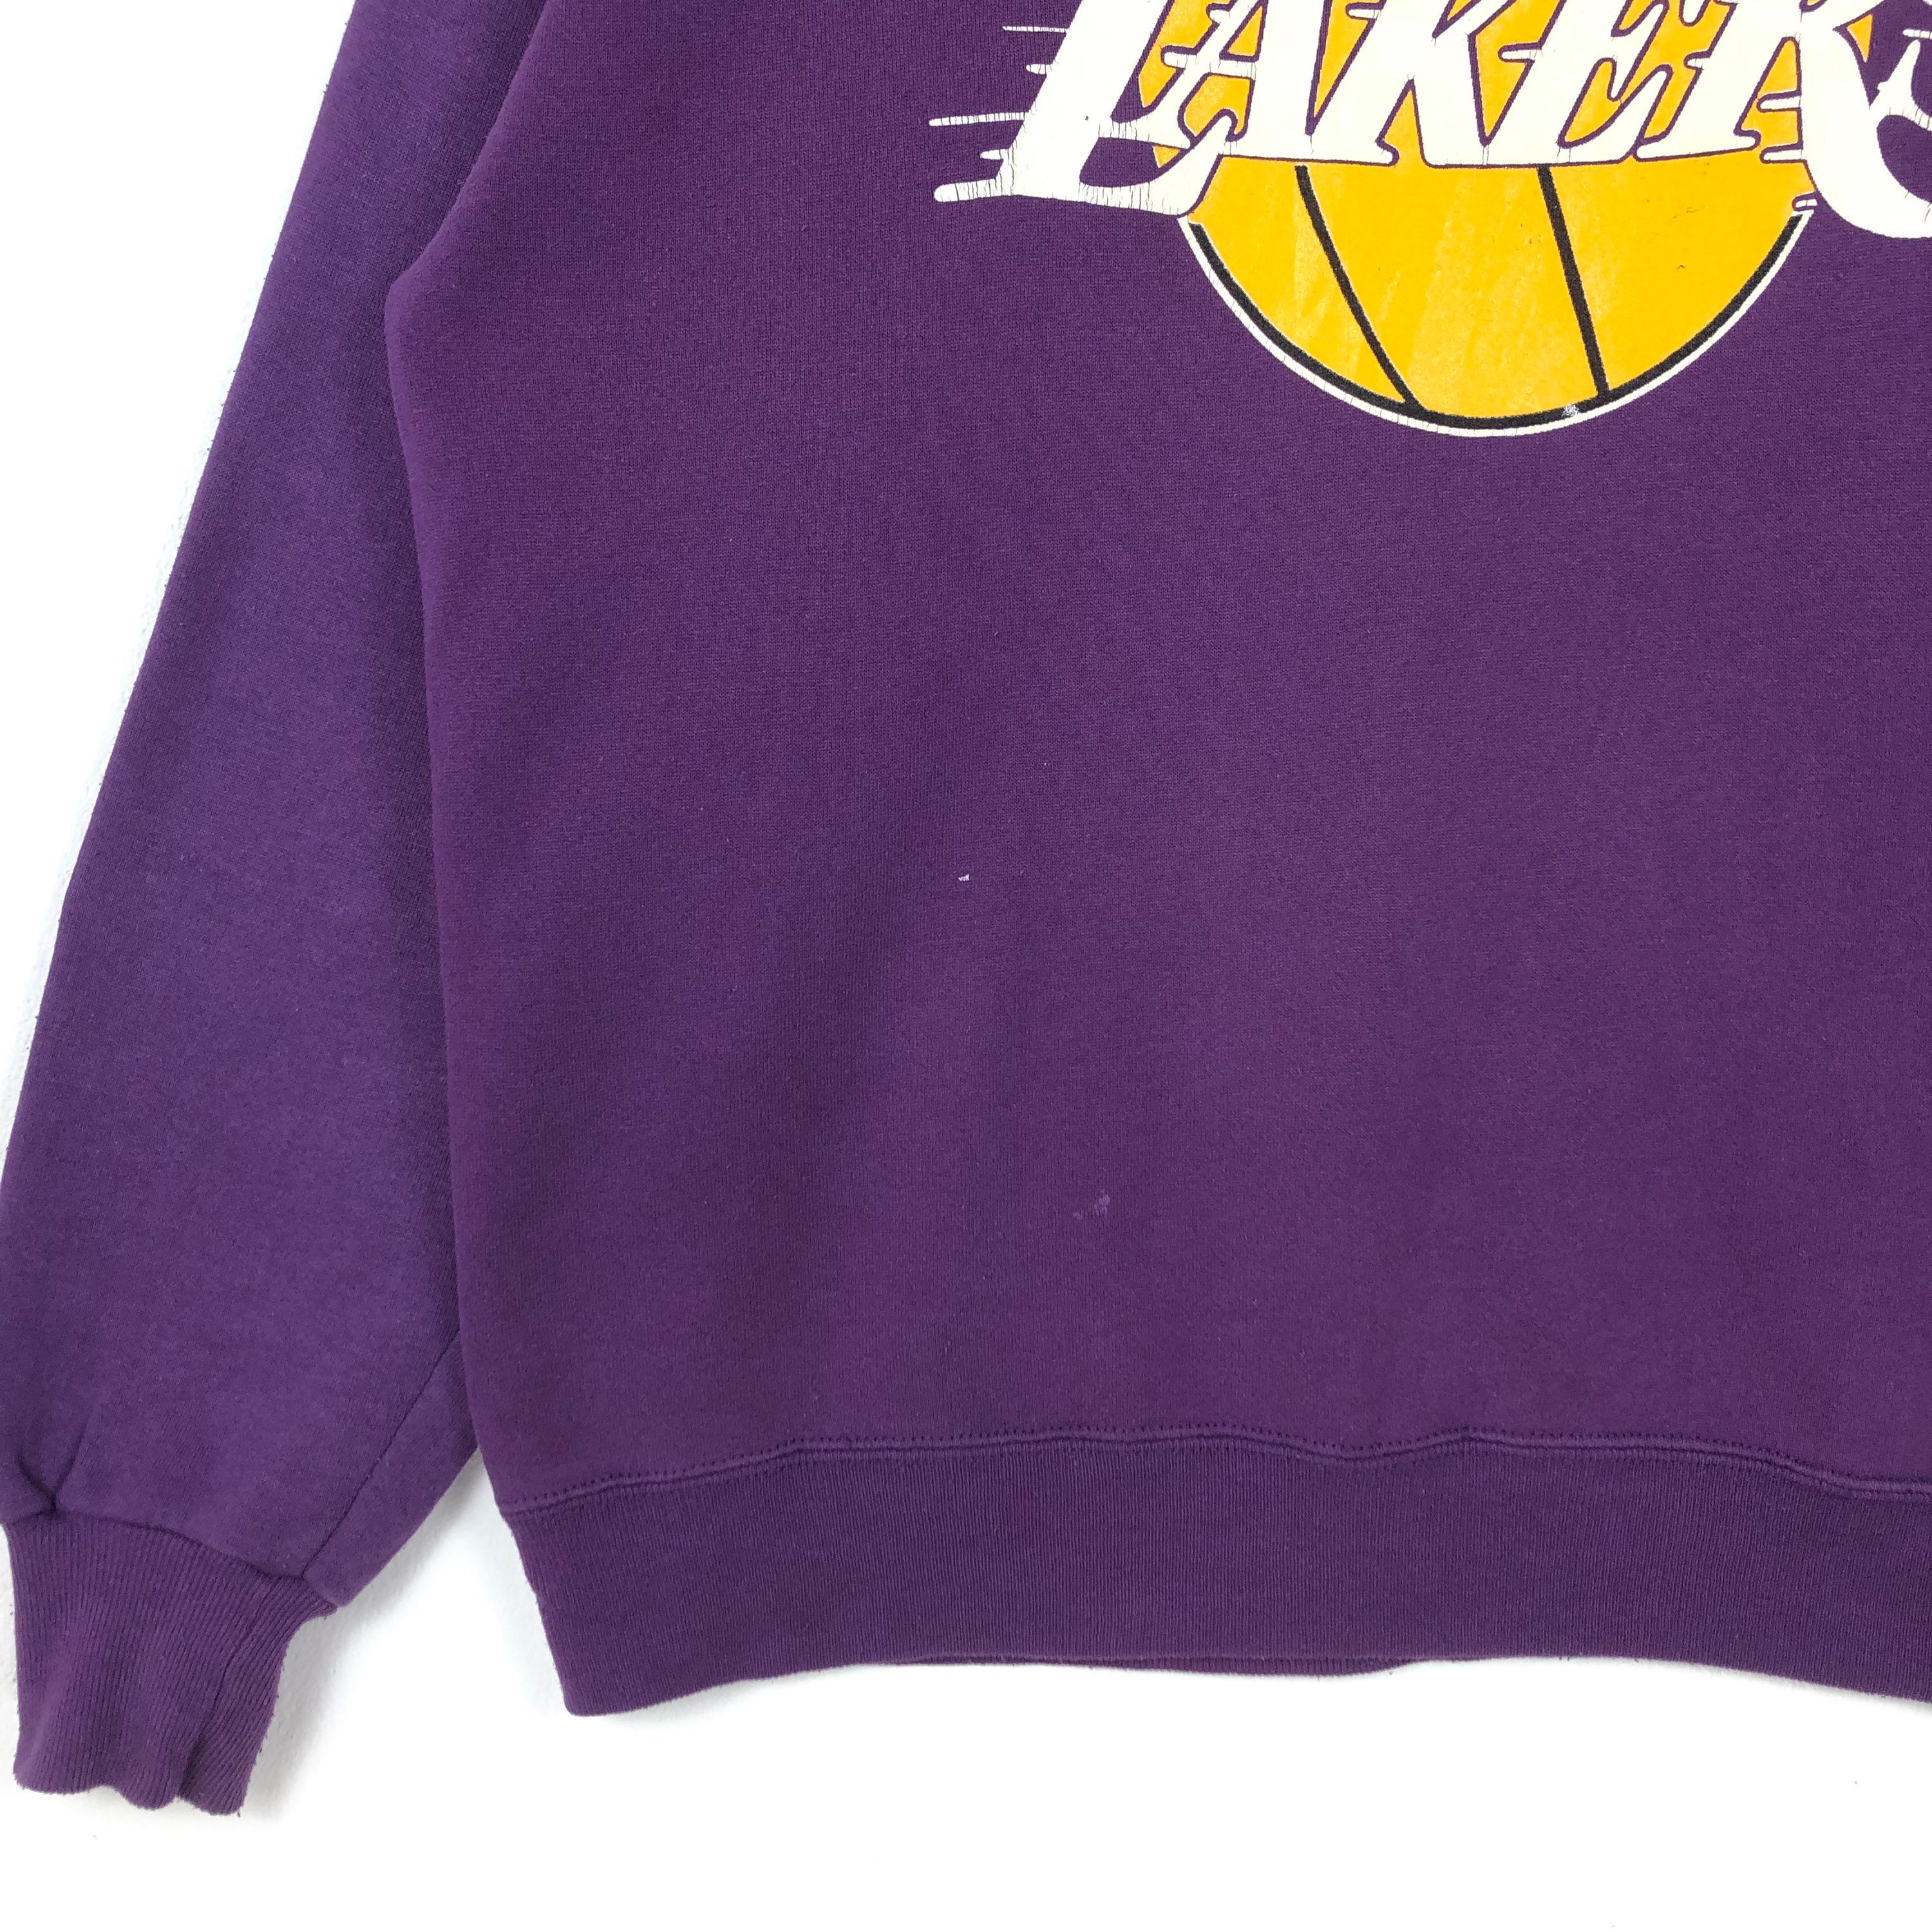 Hottertees Los Angeles 90s Vintage Lakers Sweatshirt